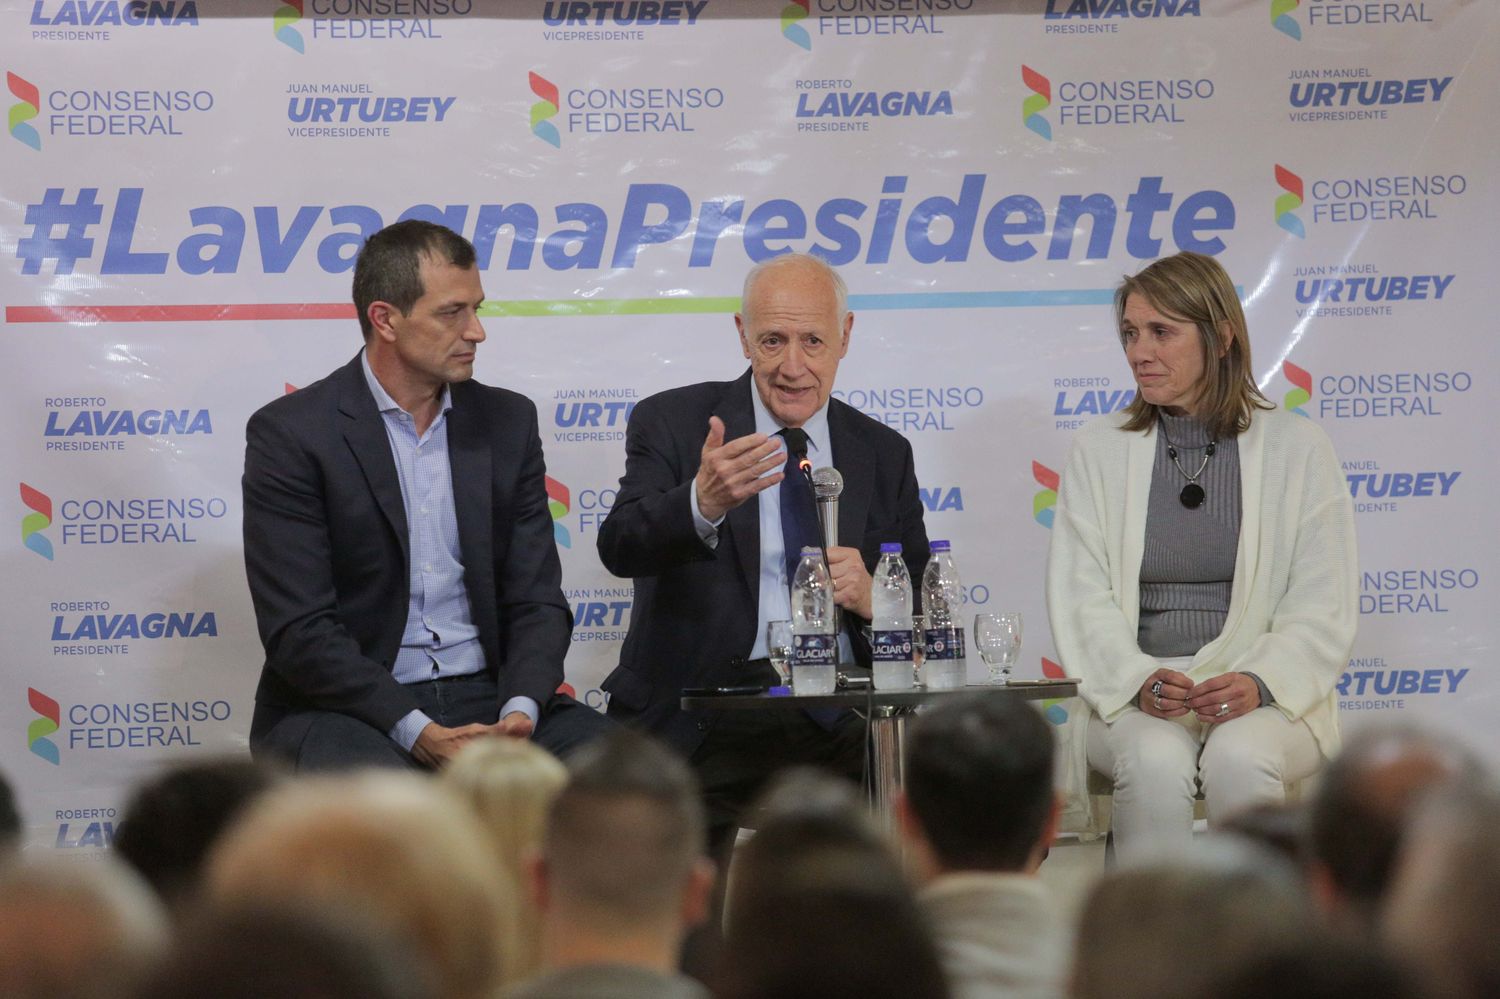 Roberto Lavagna en Vicente López: "Los dos últimos gobiernos dieron malos resultados"